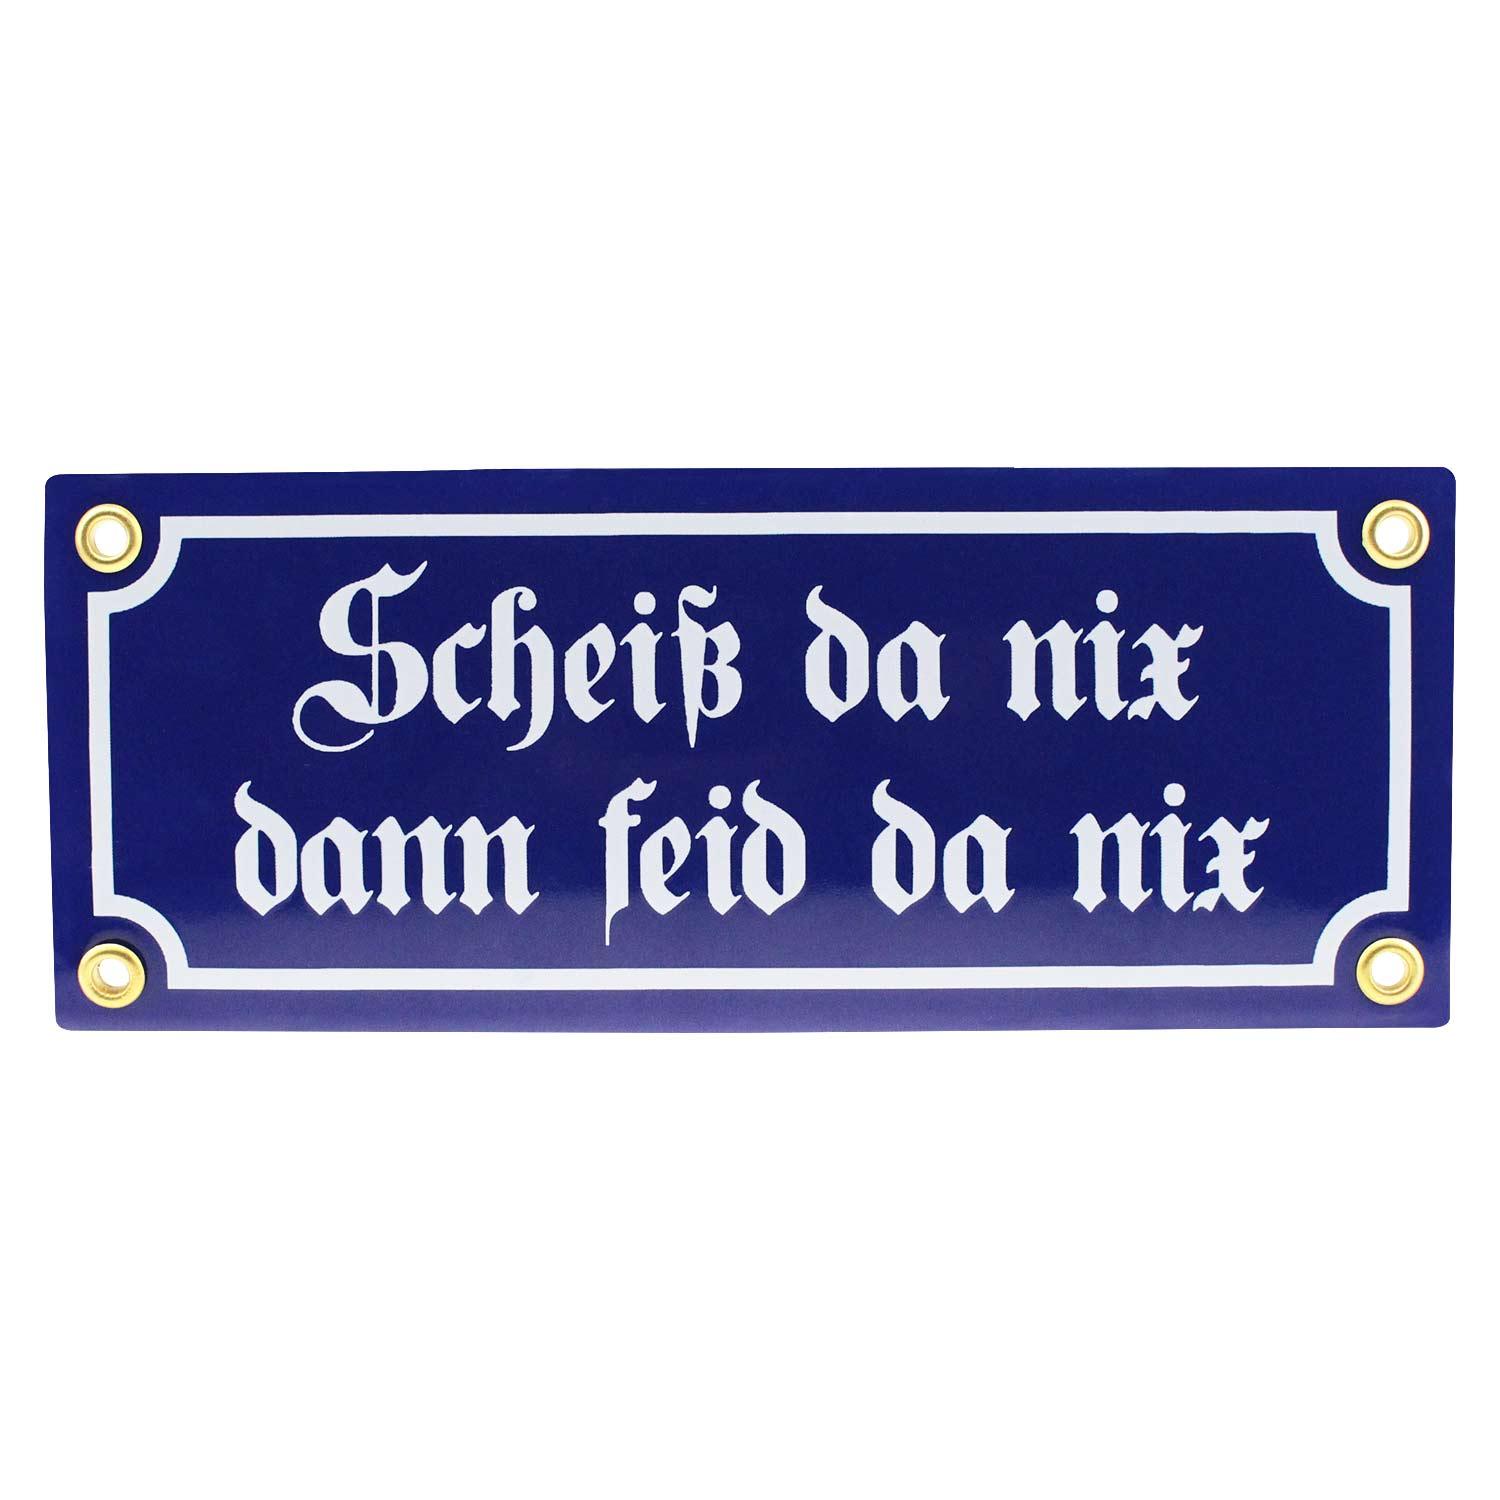 Emaille-Schild "Scheiß da nix, dann feid da nix" - bavariashop - mei LebensGfui